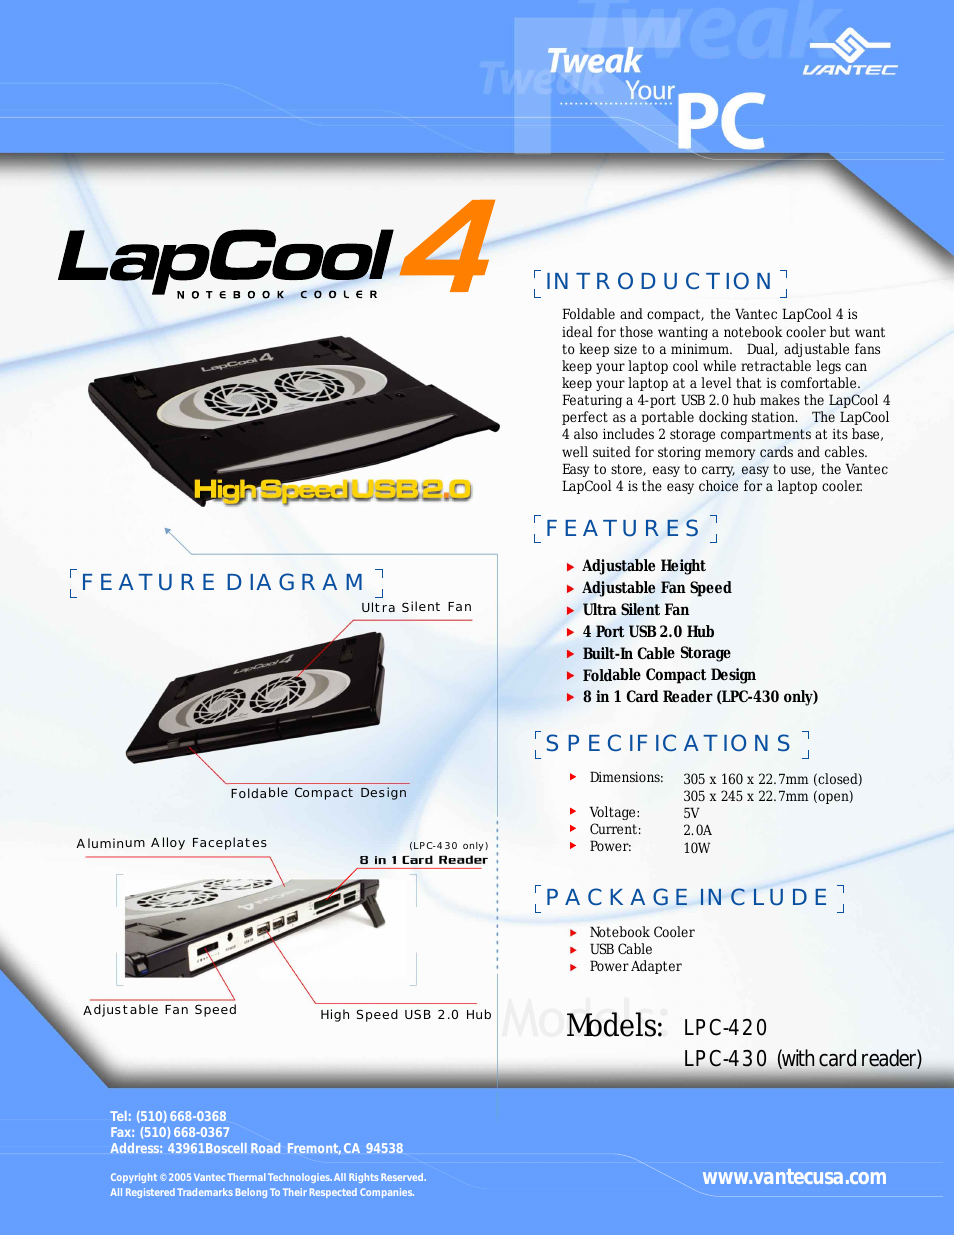 LapCool 4 LPC-420